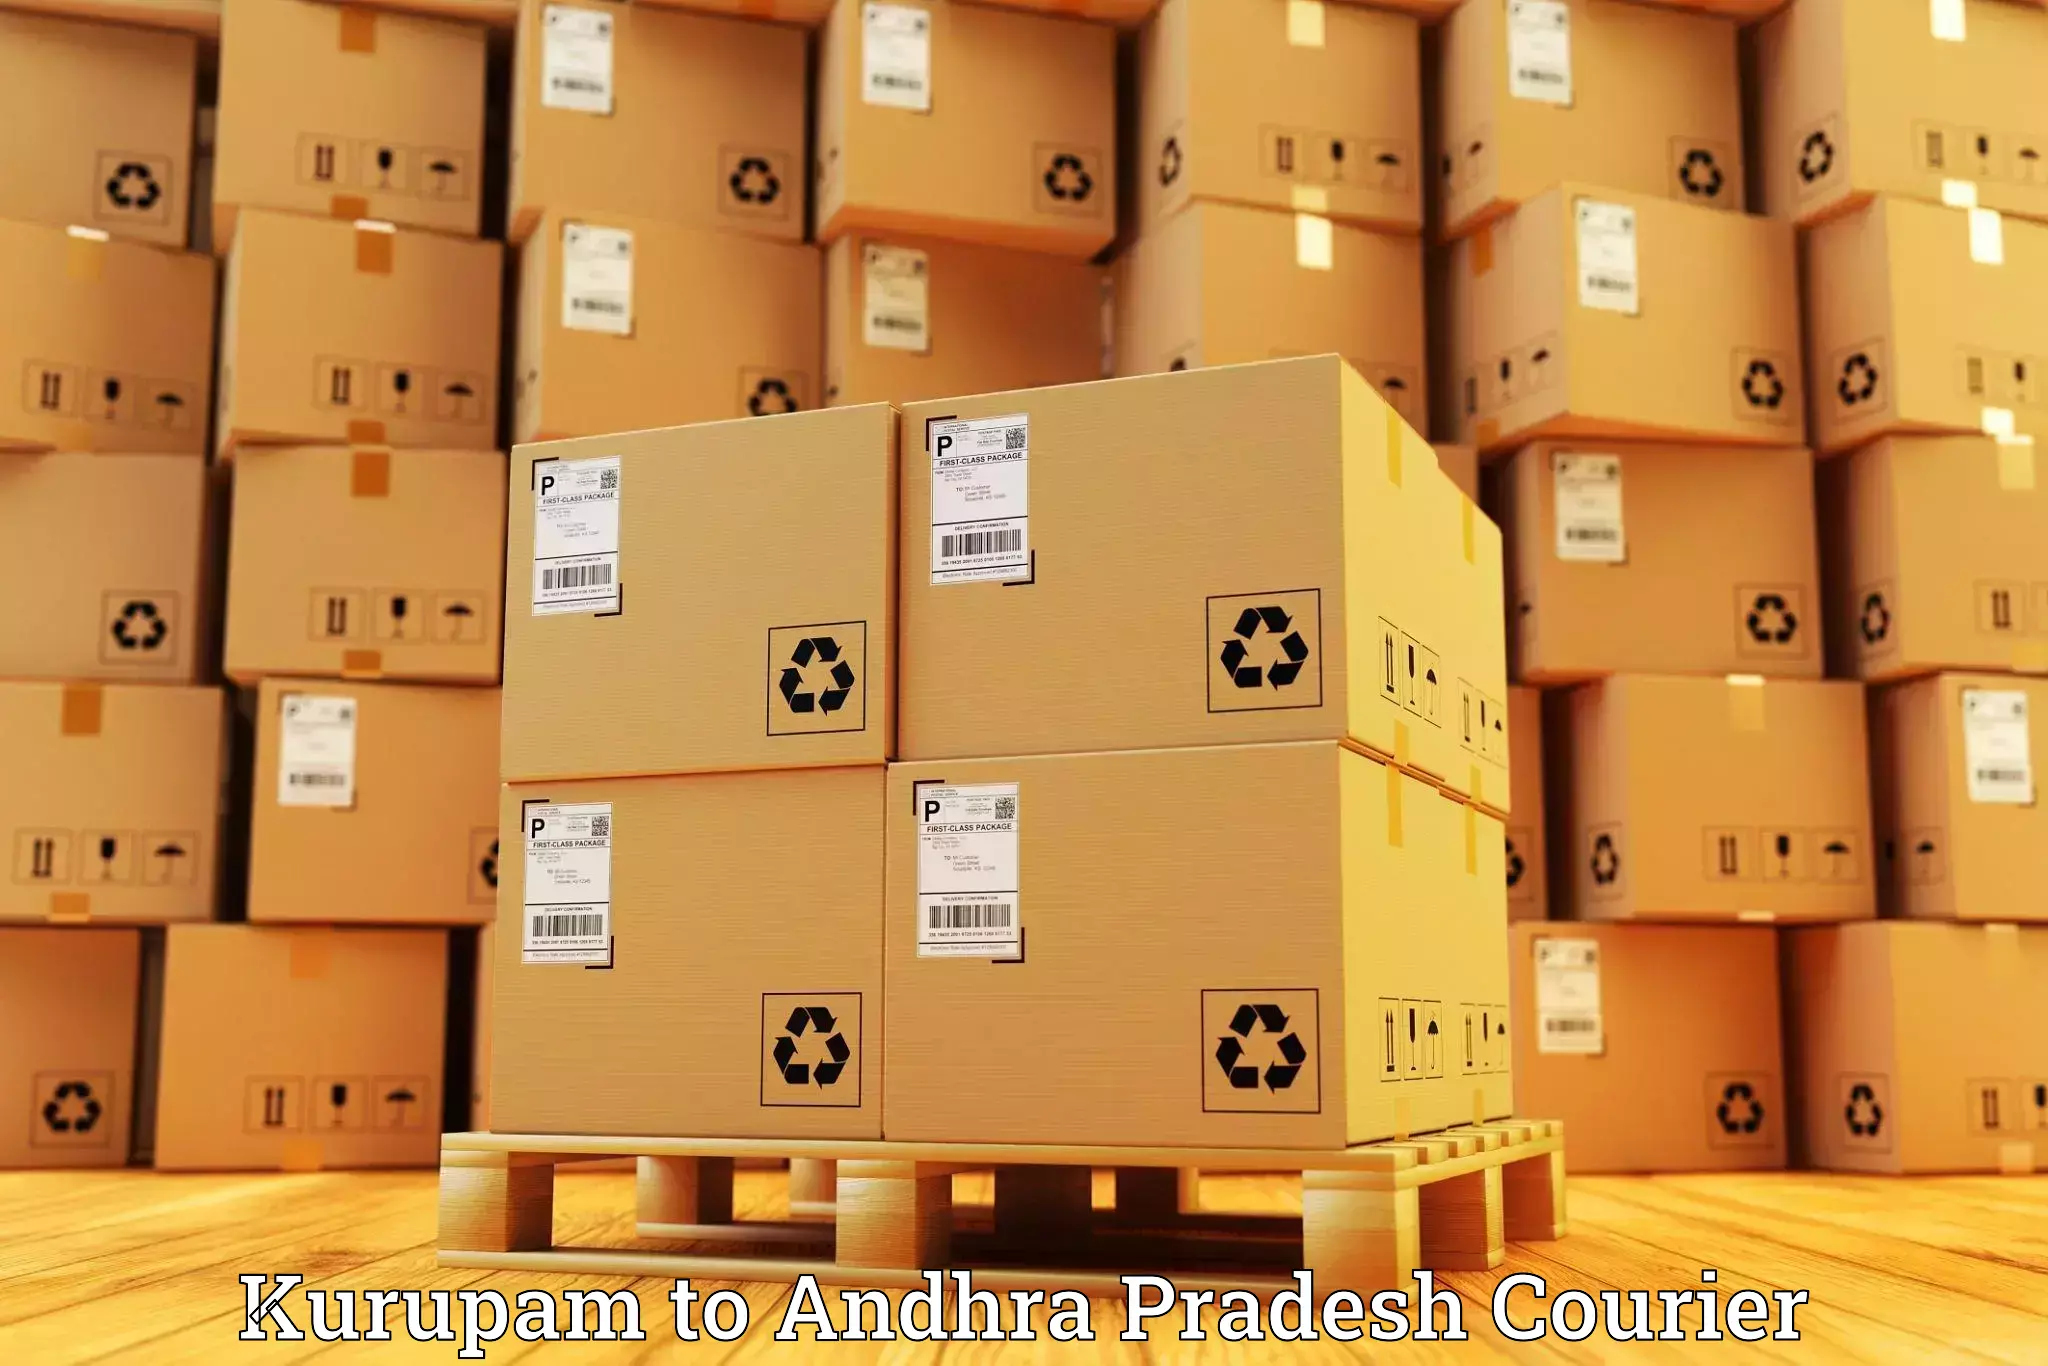 Professional courier services Kurupam to Cumbum Prakasam